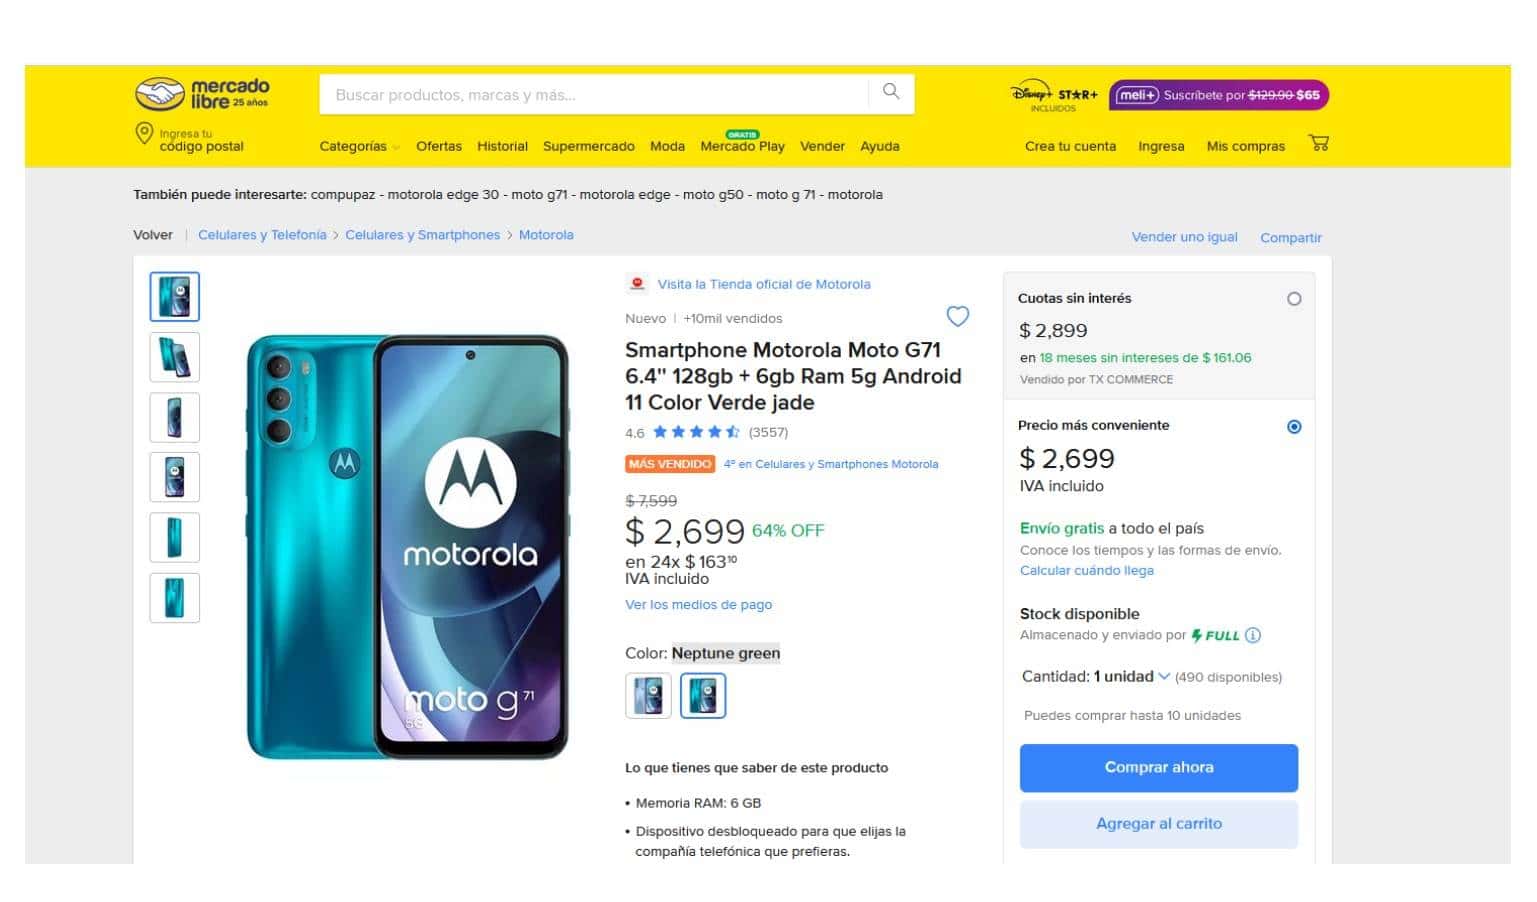  Cuánto cuesta el smartphone Motorola Moto G71 en Mercado Libre